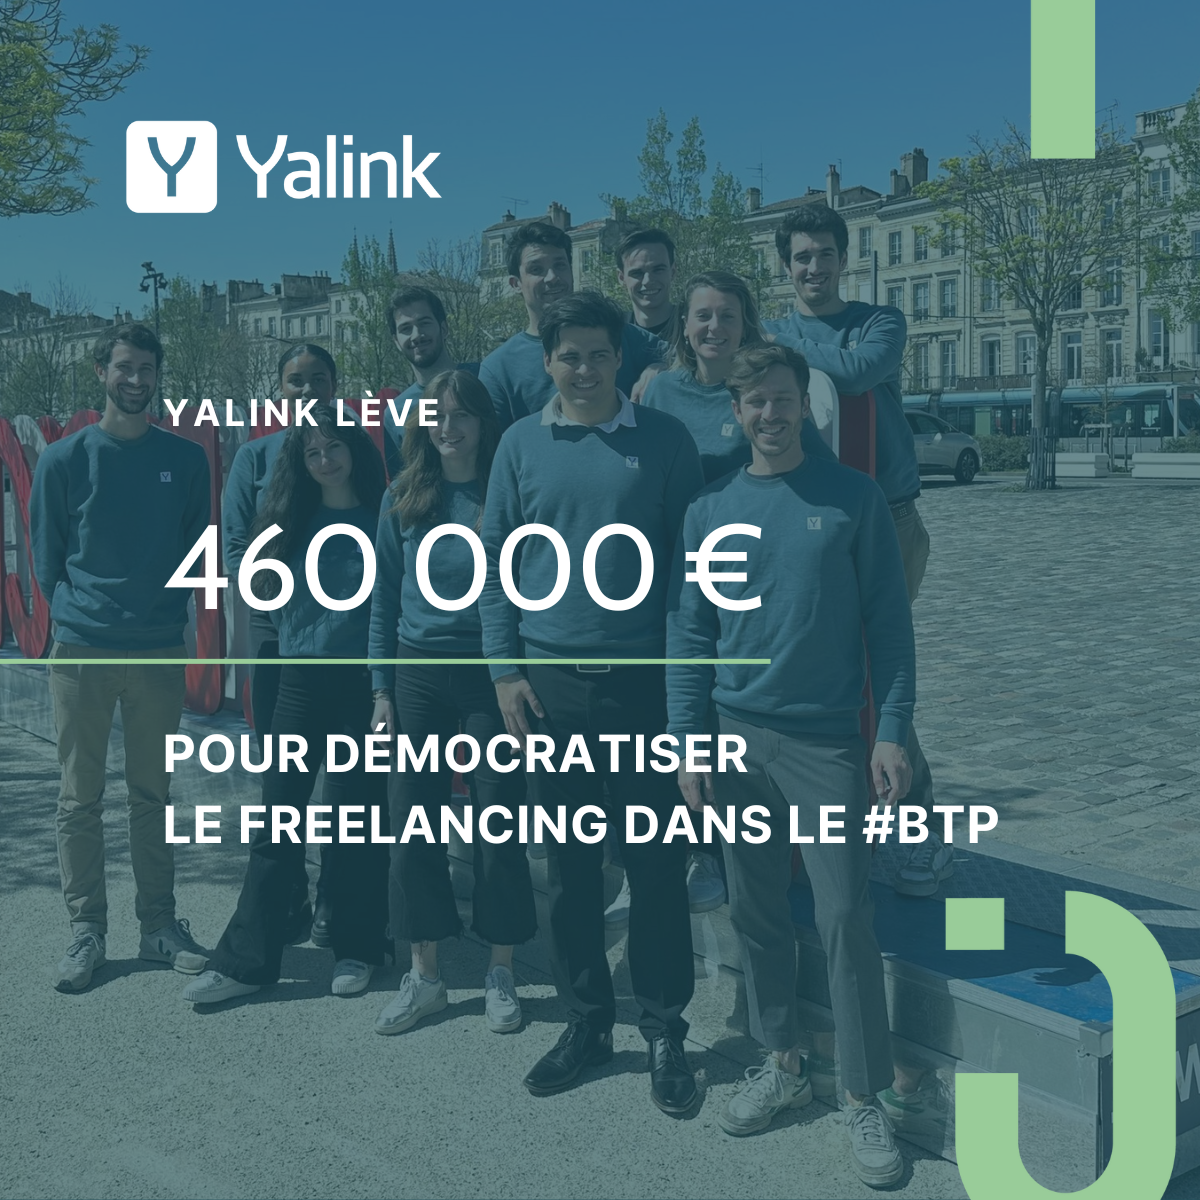 Cover Image for Yalink annonce sa première levée de fonds